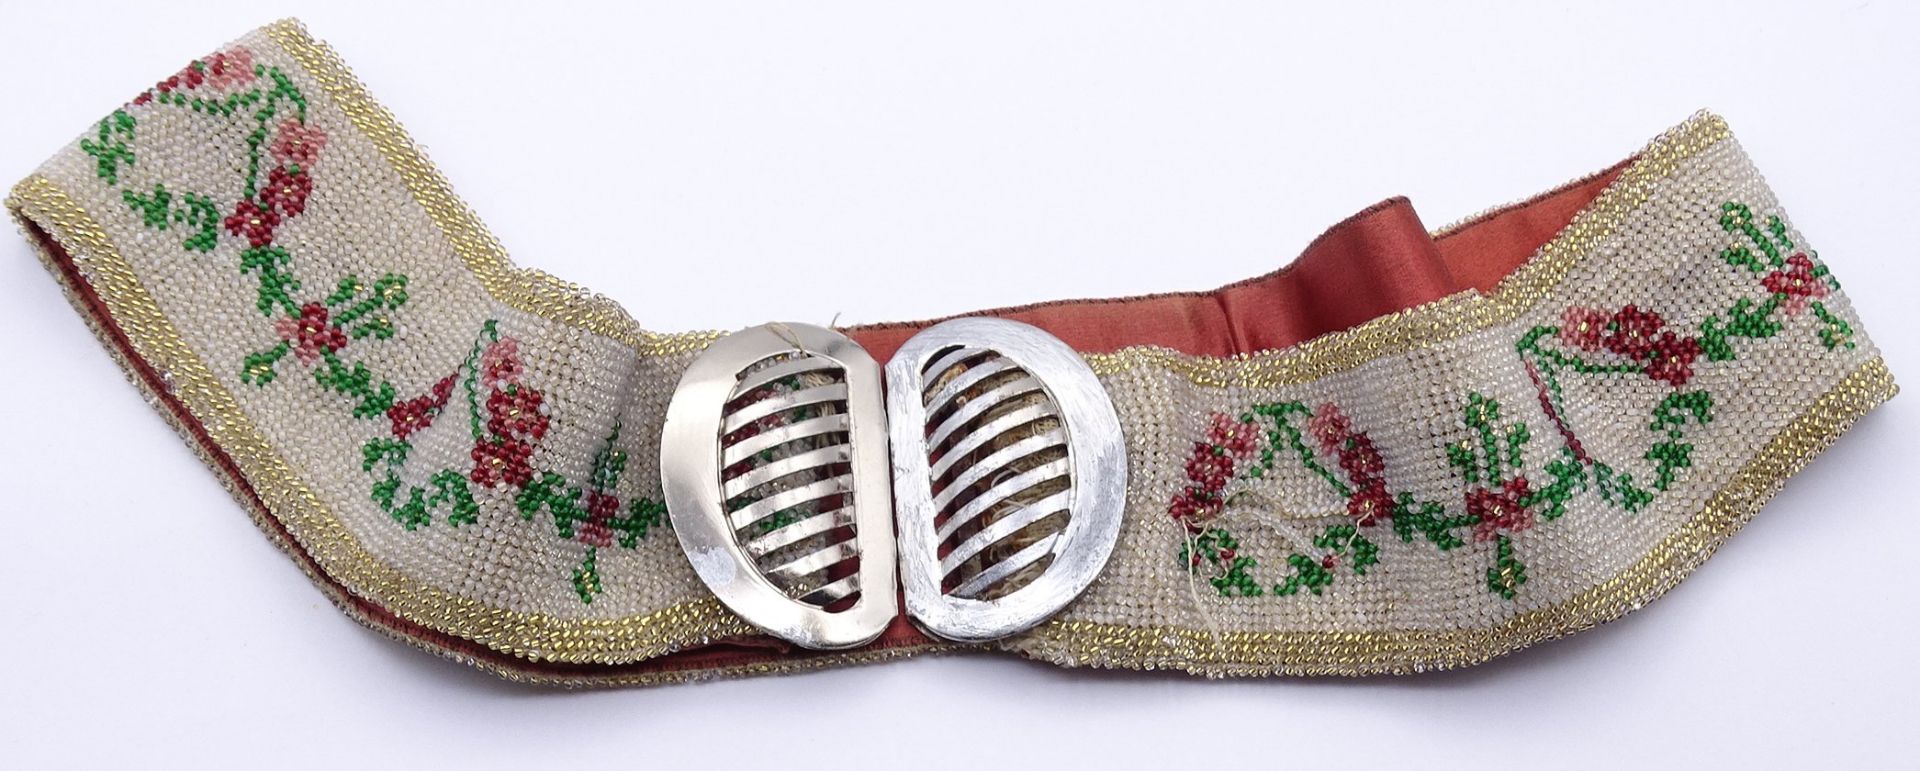 Trachtengürtel mit Perlenstickerei, 1x Faden gezogen, Metallschnalle, Alters- und Gebrauchsspuren